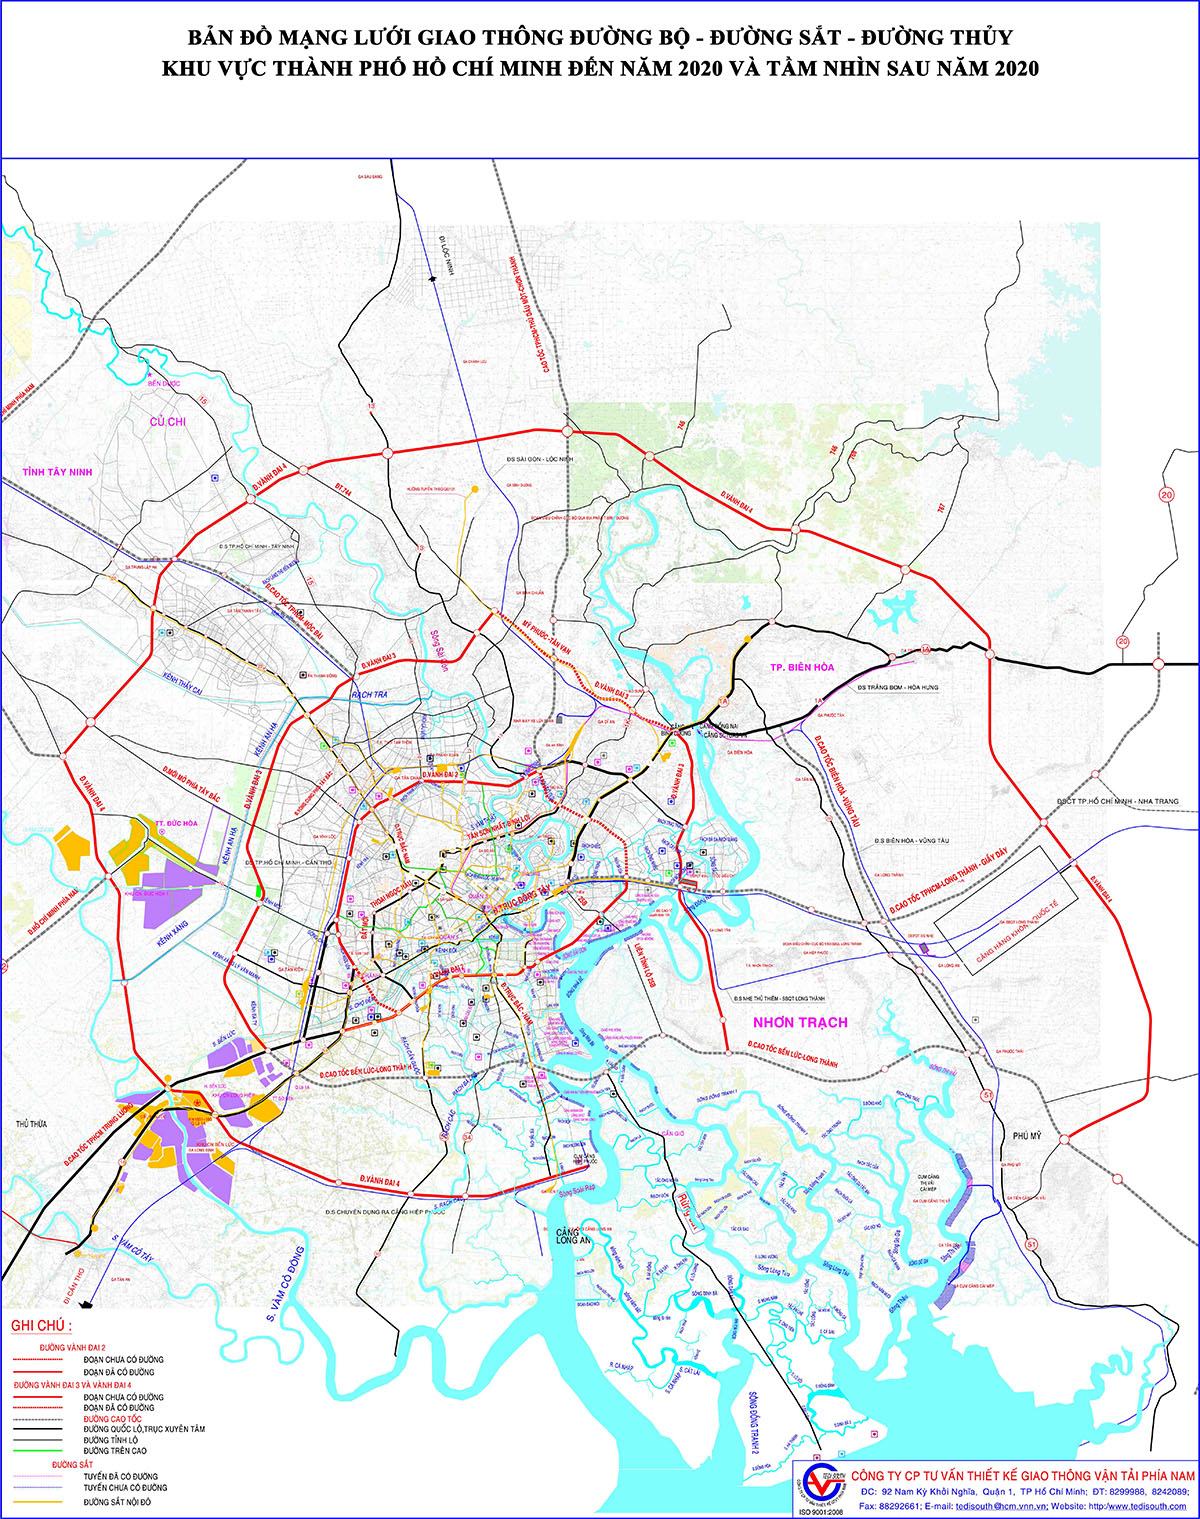 Bản đồ quy hoạch đường vành đai bao quanh thành phố Hồ Chí Minh